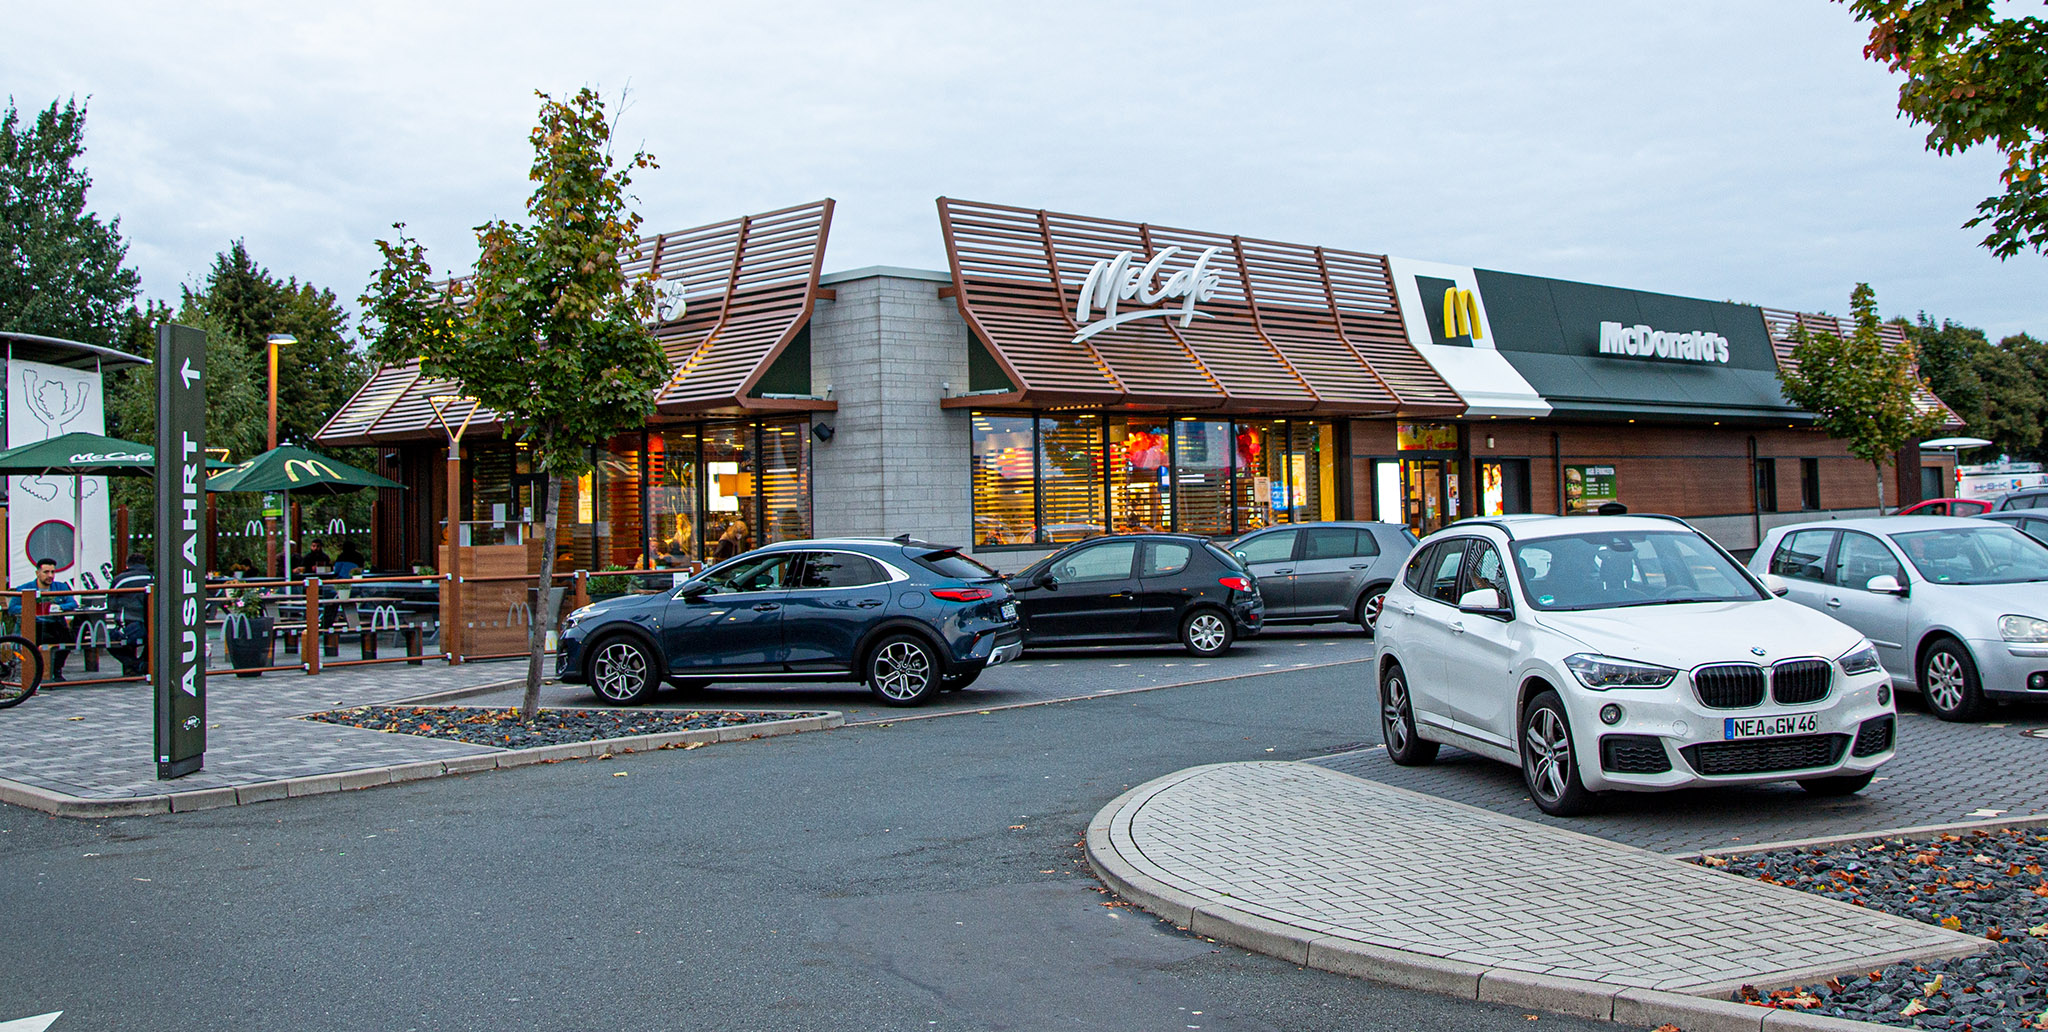 Das McDonald’s-Restaurant in Hildesheim (Albert-Einstein-Straße)